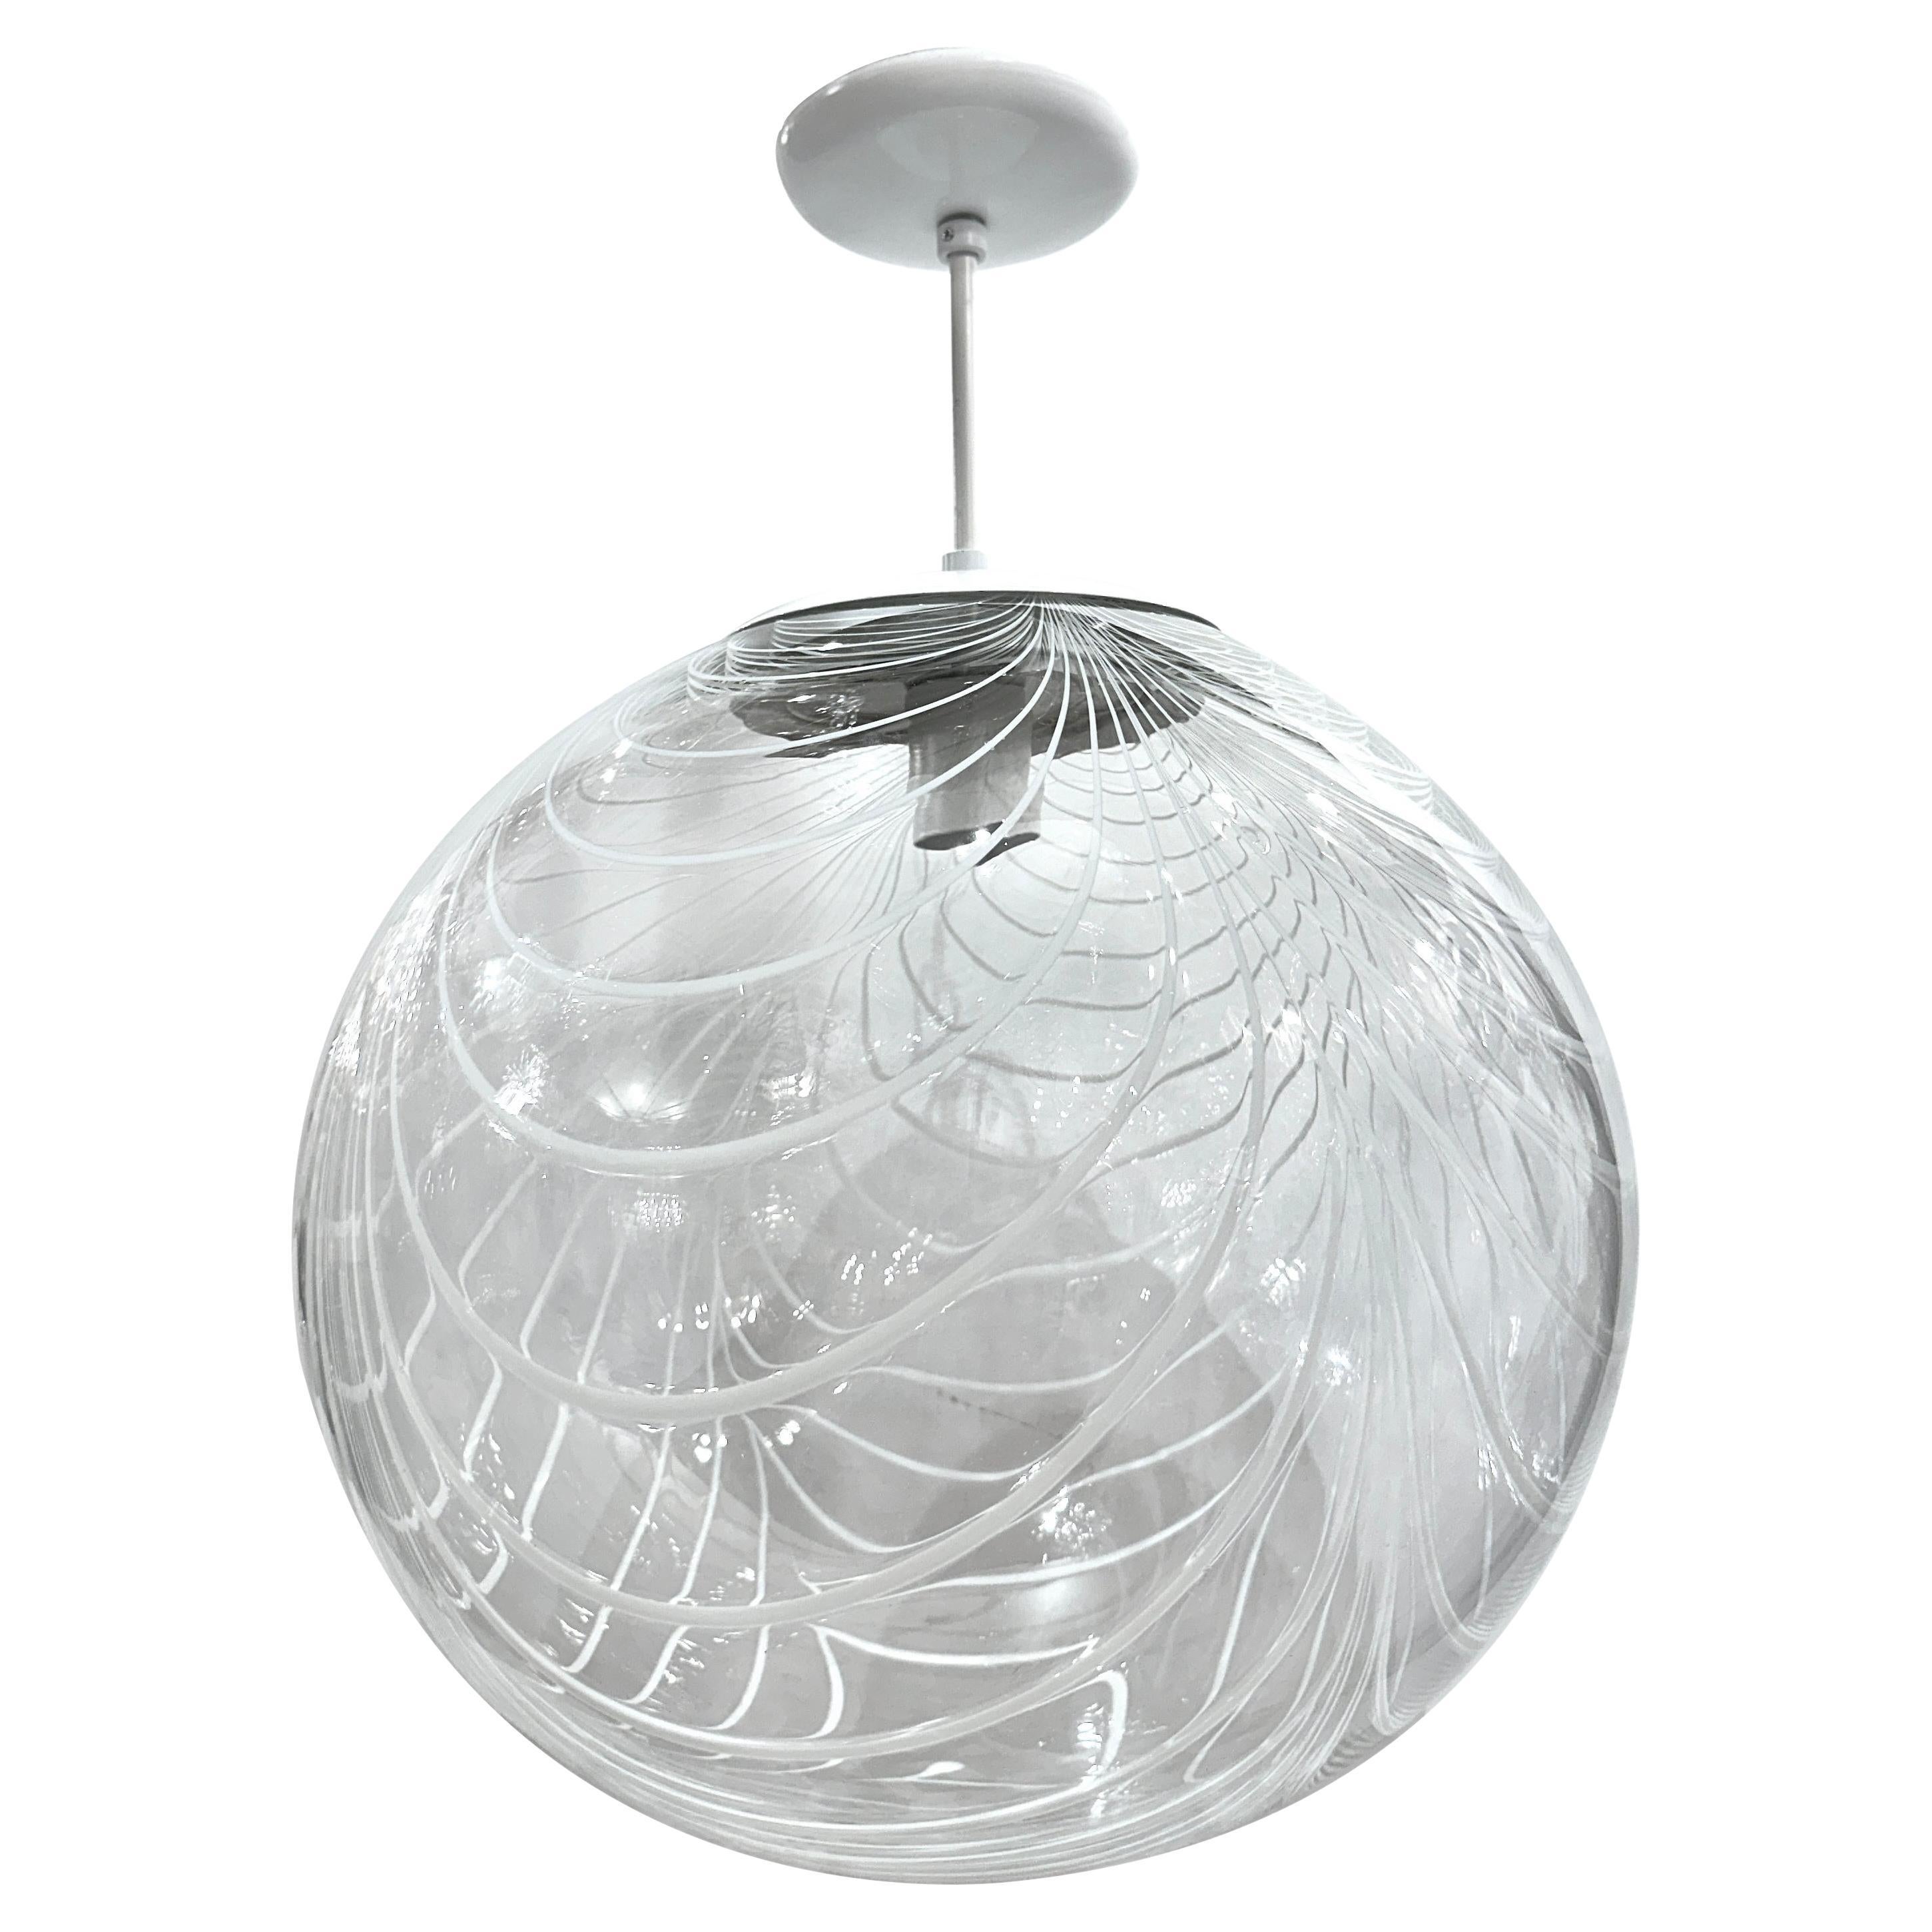 Ensemble de lanternes globe en verre soufflé, vendues individuellement